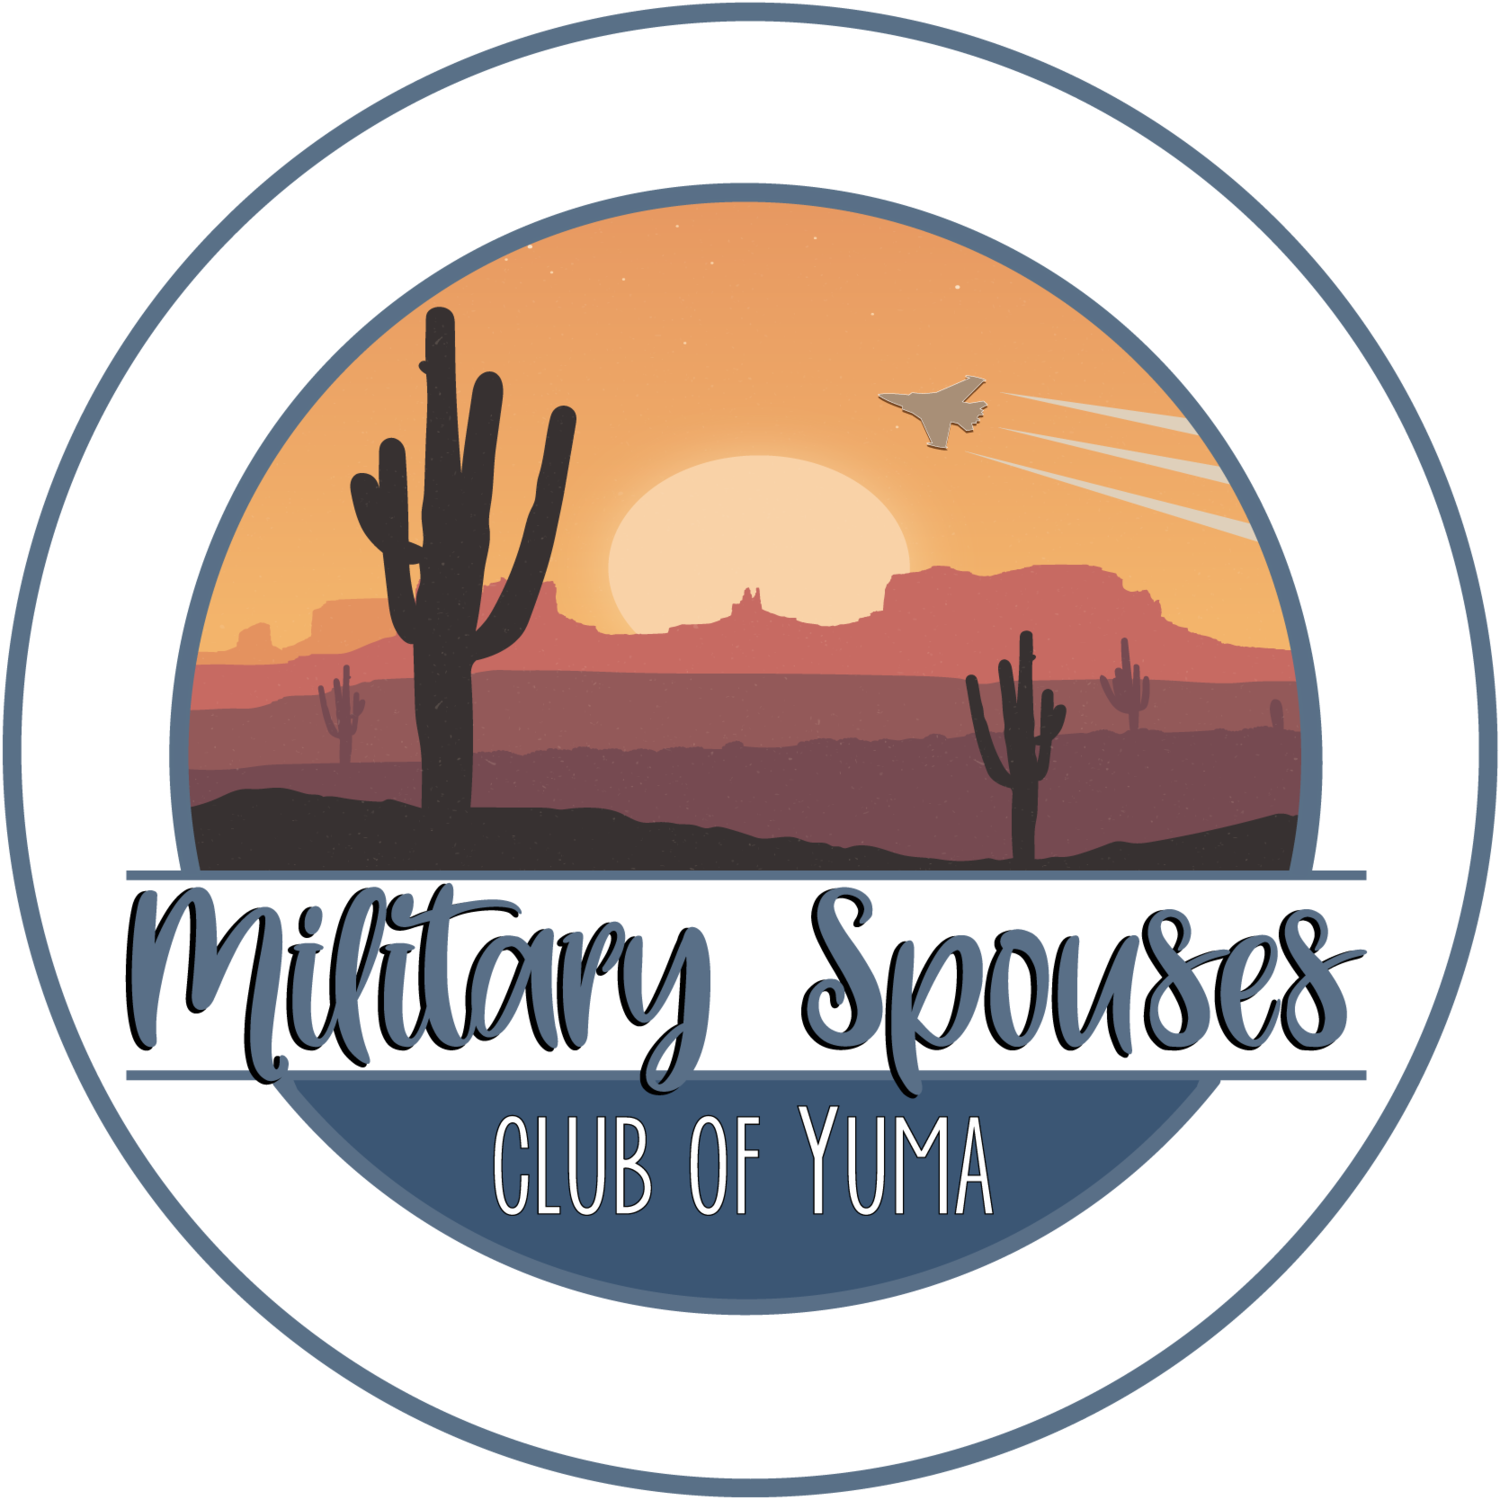 Military Spouses Club of Yuma